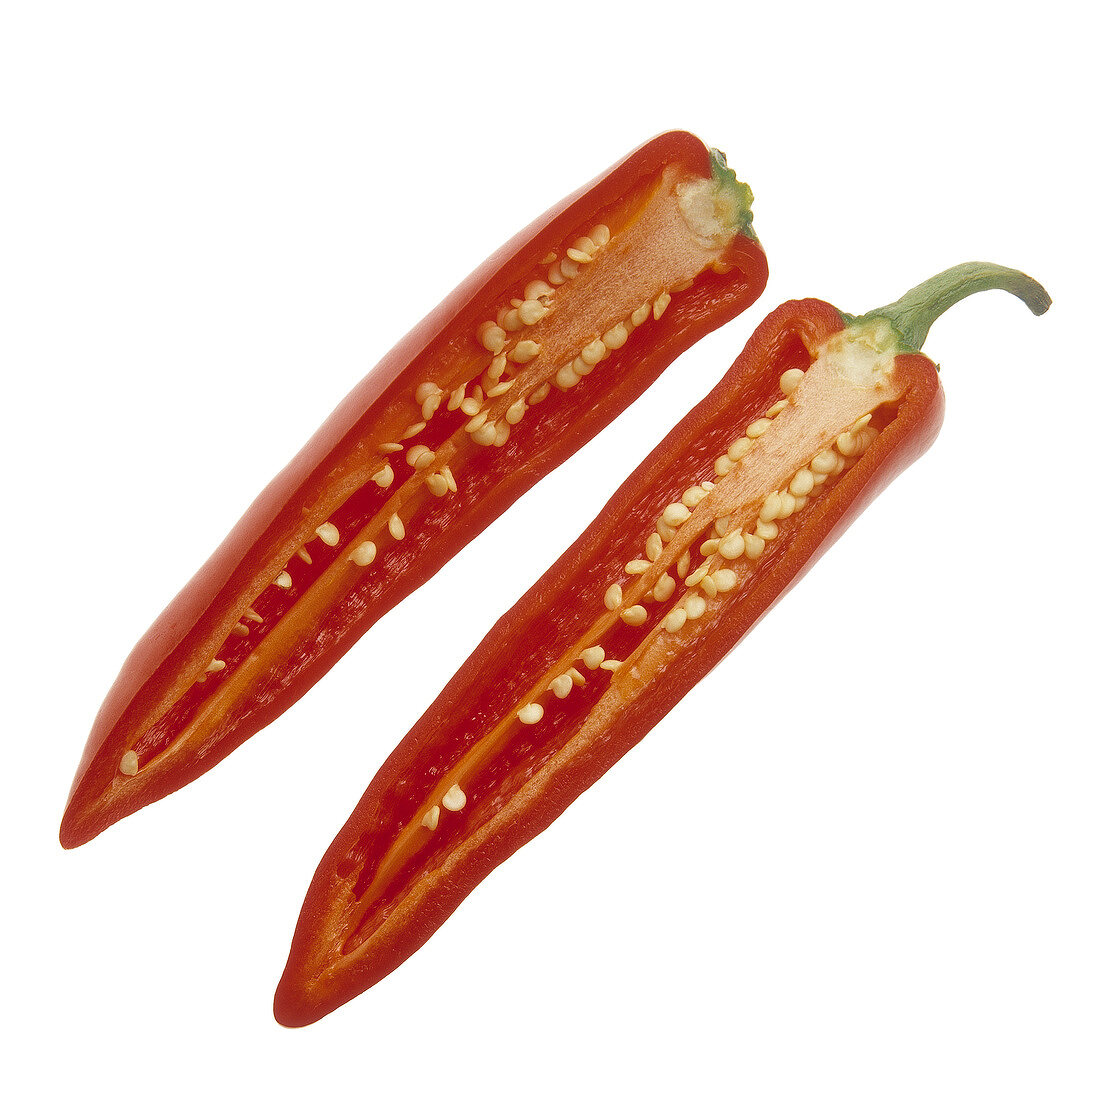 Sliced long red pepper